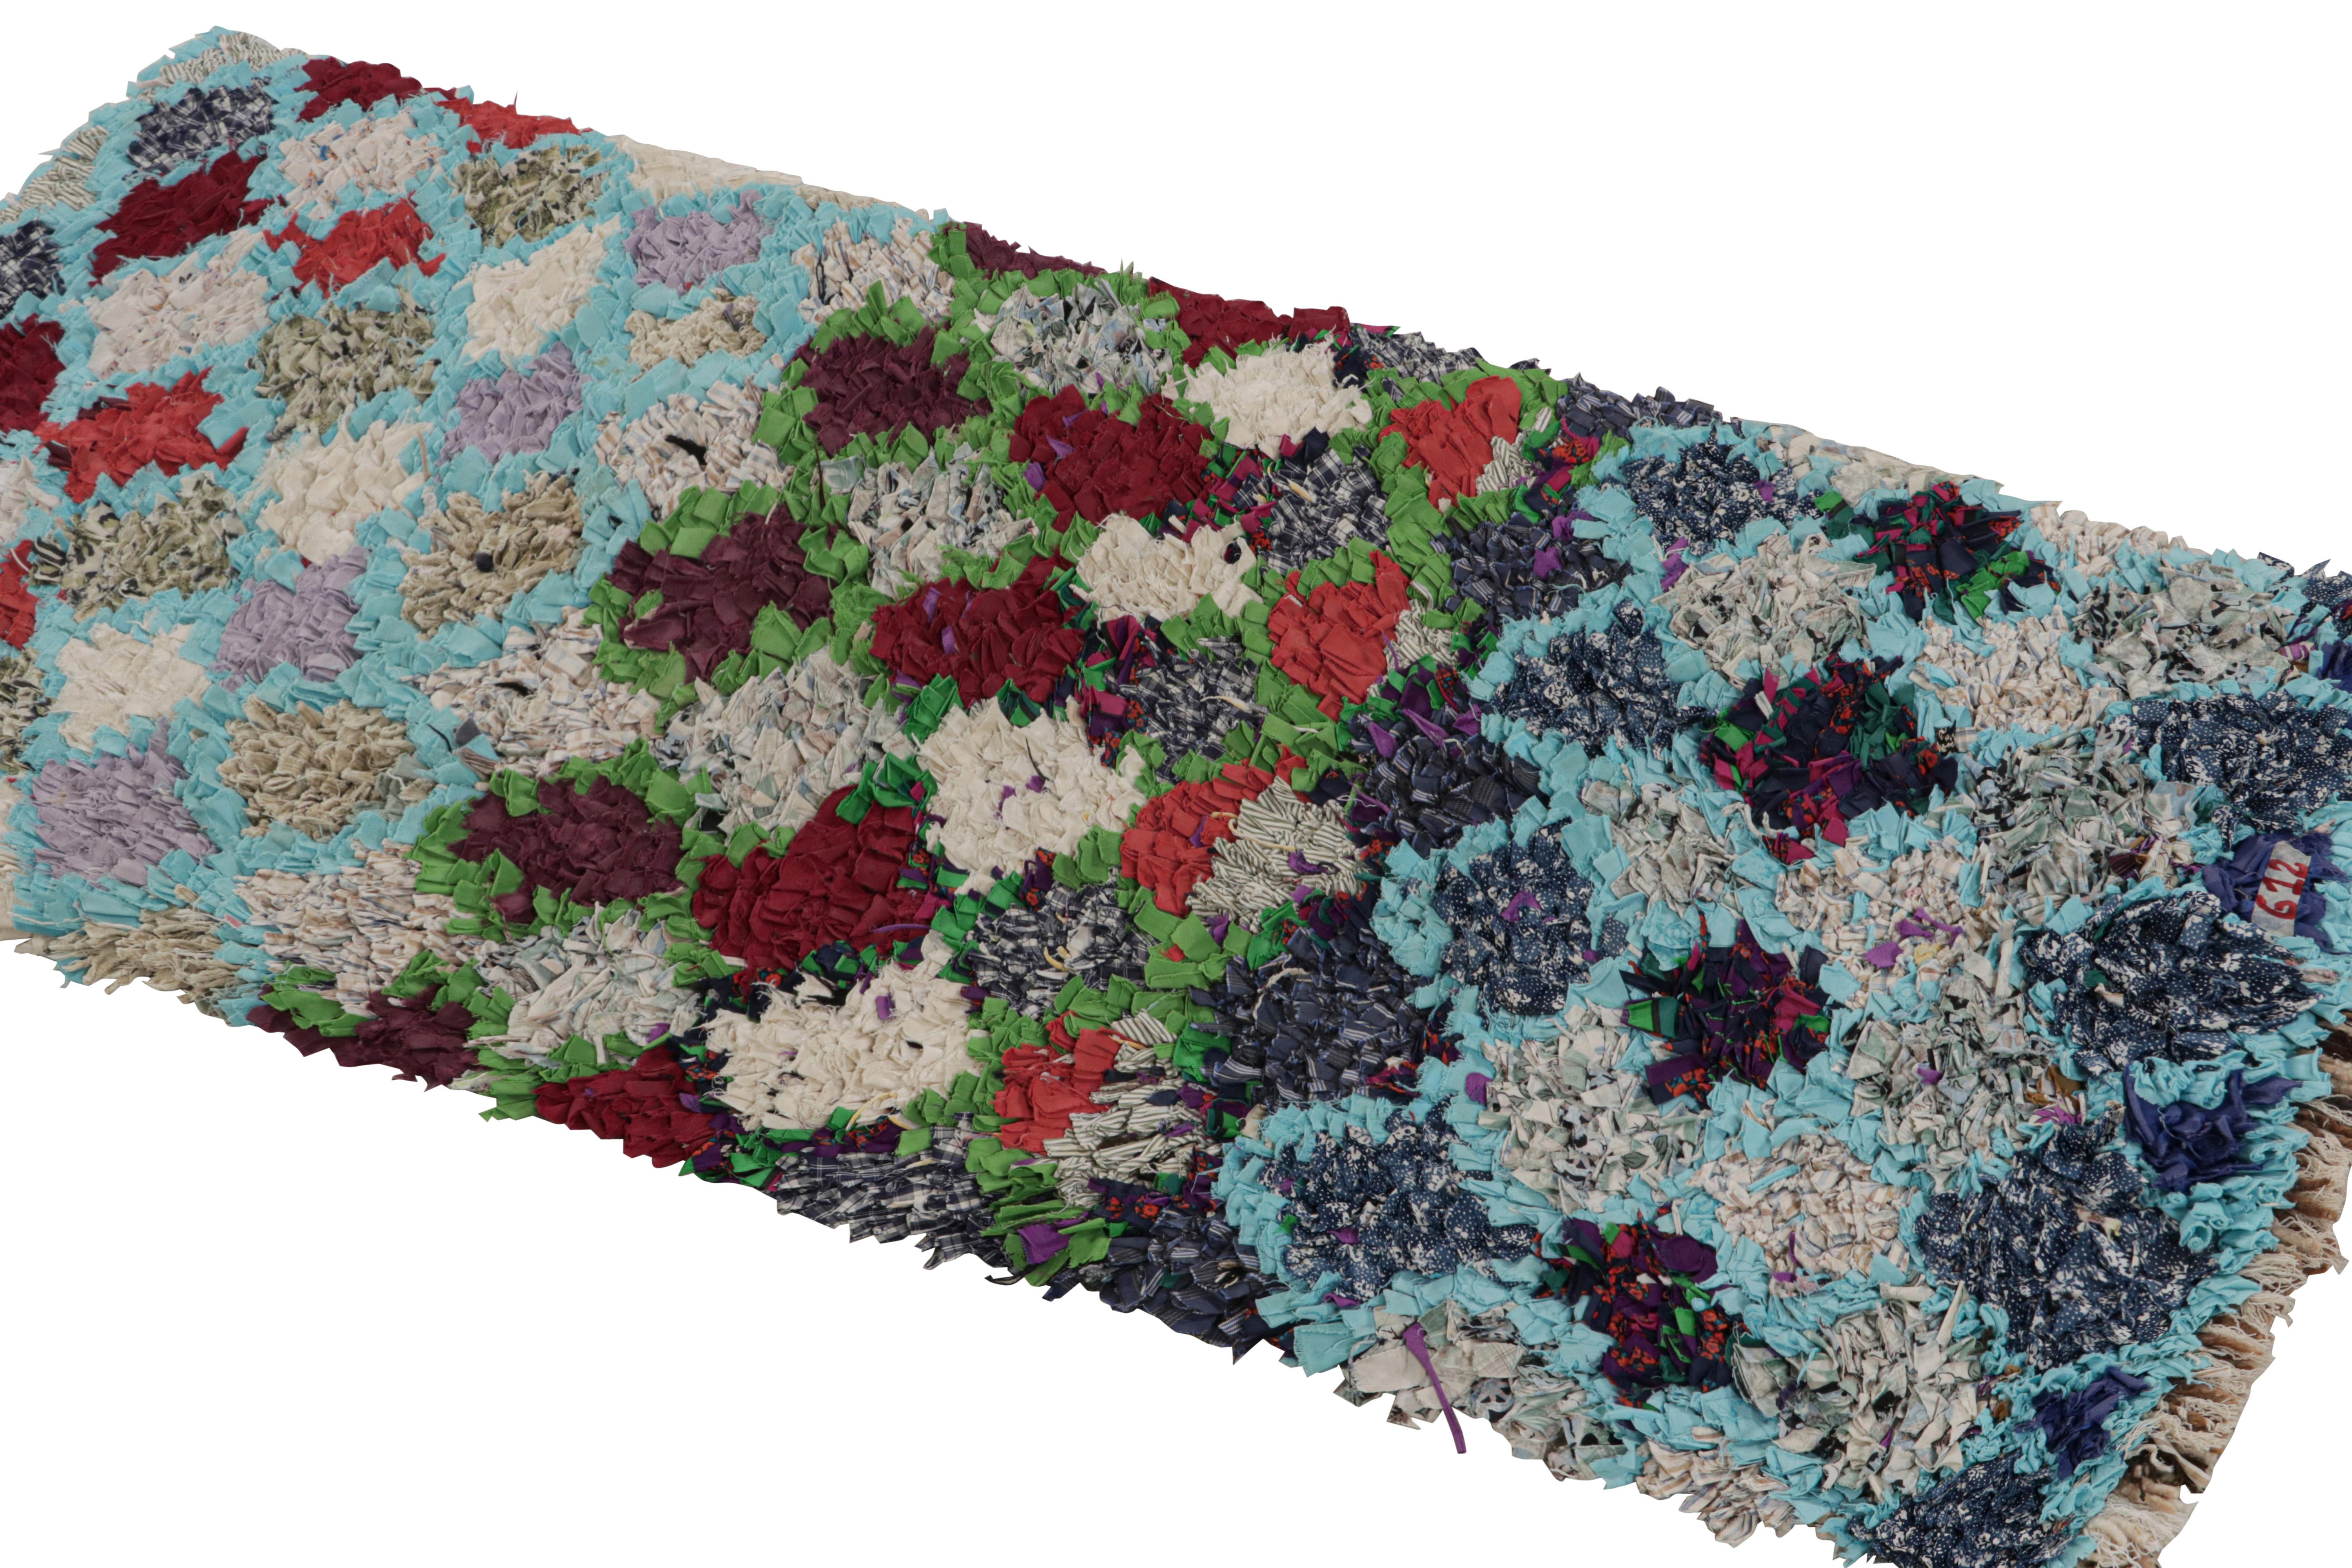 Noué à la main en tissu vers 1950-1960, ce tapis boucherouite marocain vintage de 2x6 est censé provenir de la tribu Azilal. 

Sur le Design : 

Ce tapis présente un jeu intéressant de tons rouges, bleus, verts et gris dans les motifs géométriques.